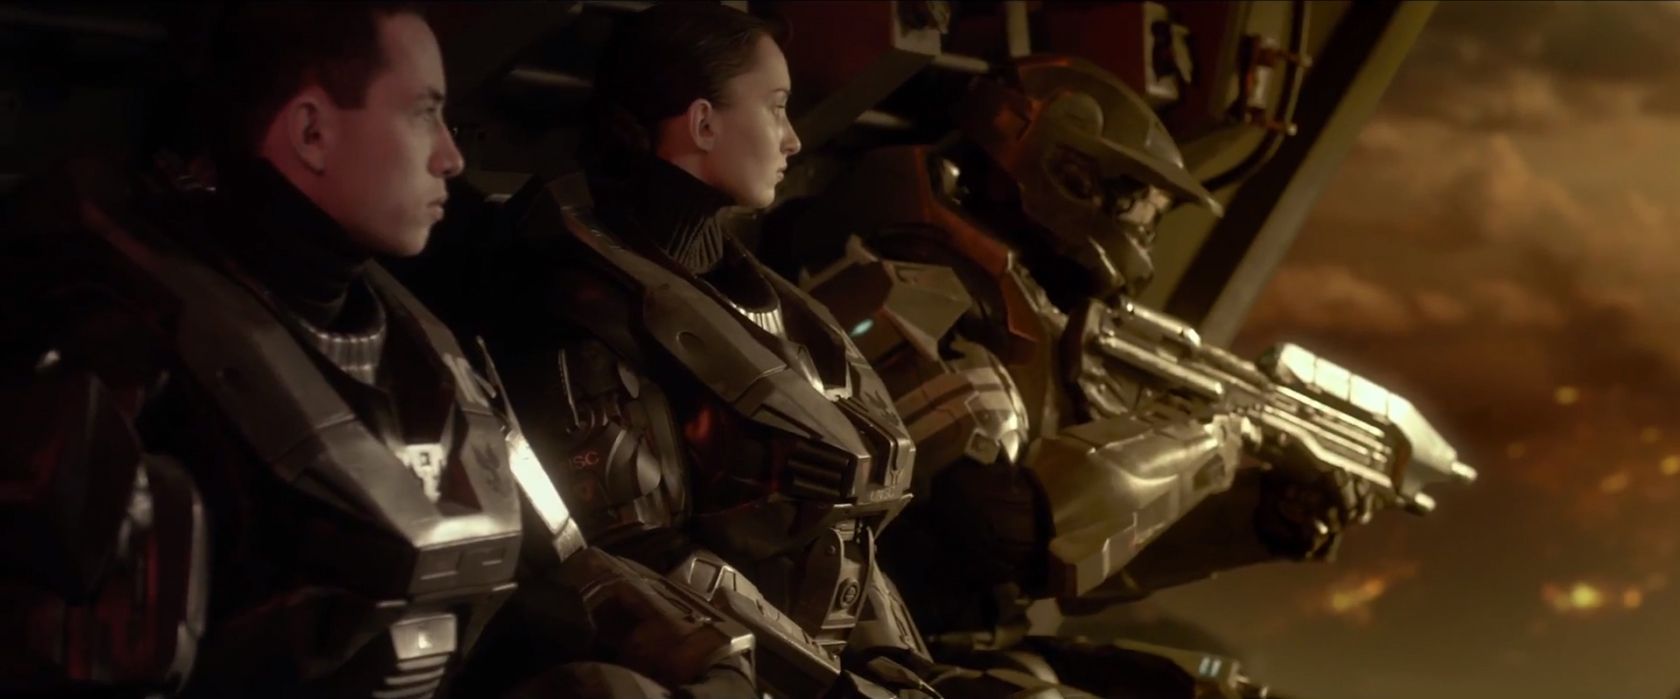 Halo 4 - Forward unto dawn - Film 1 - Blu-Ray - Screenshot 2